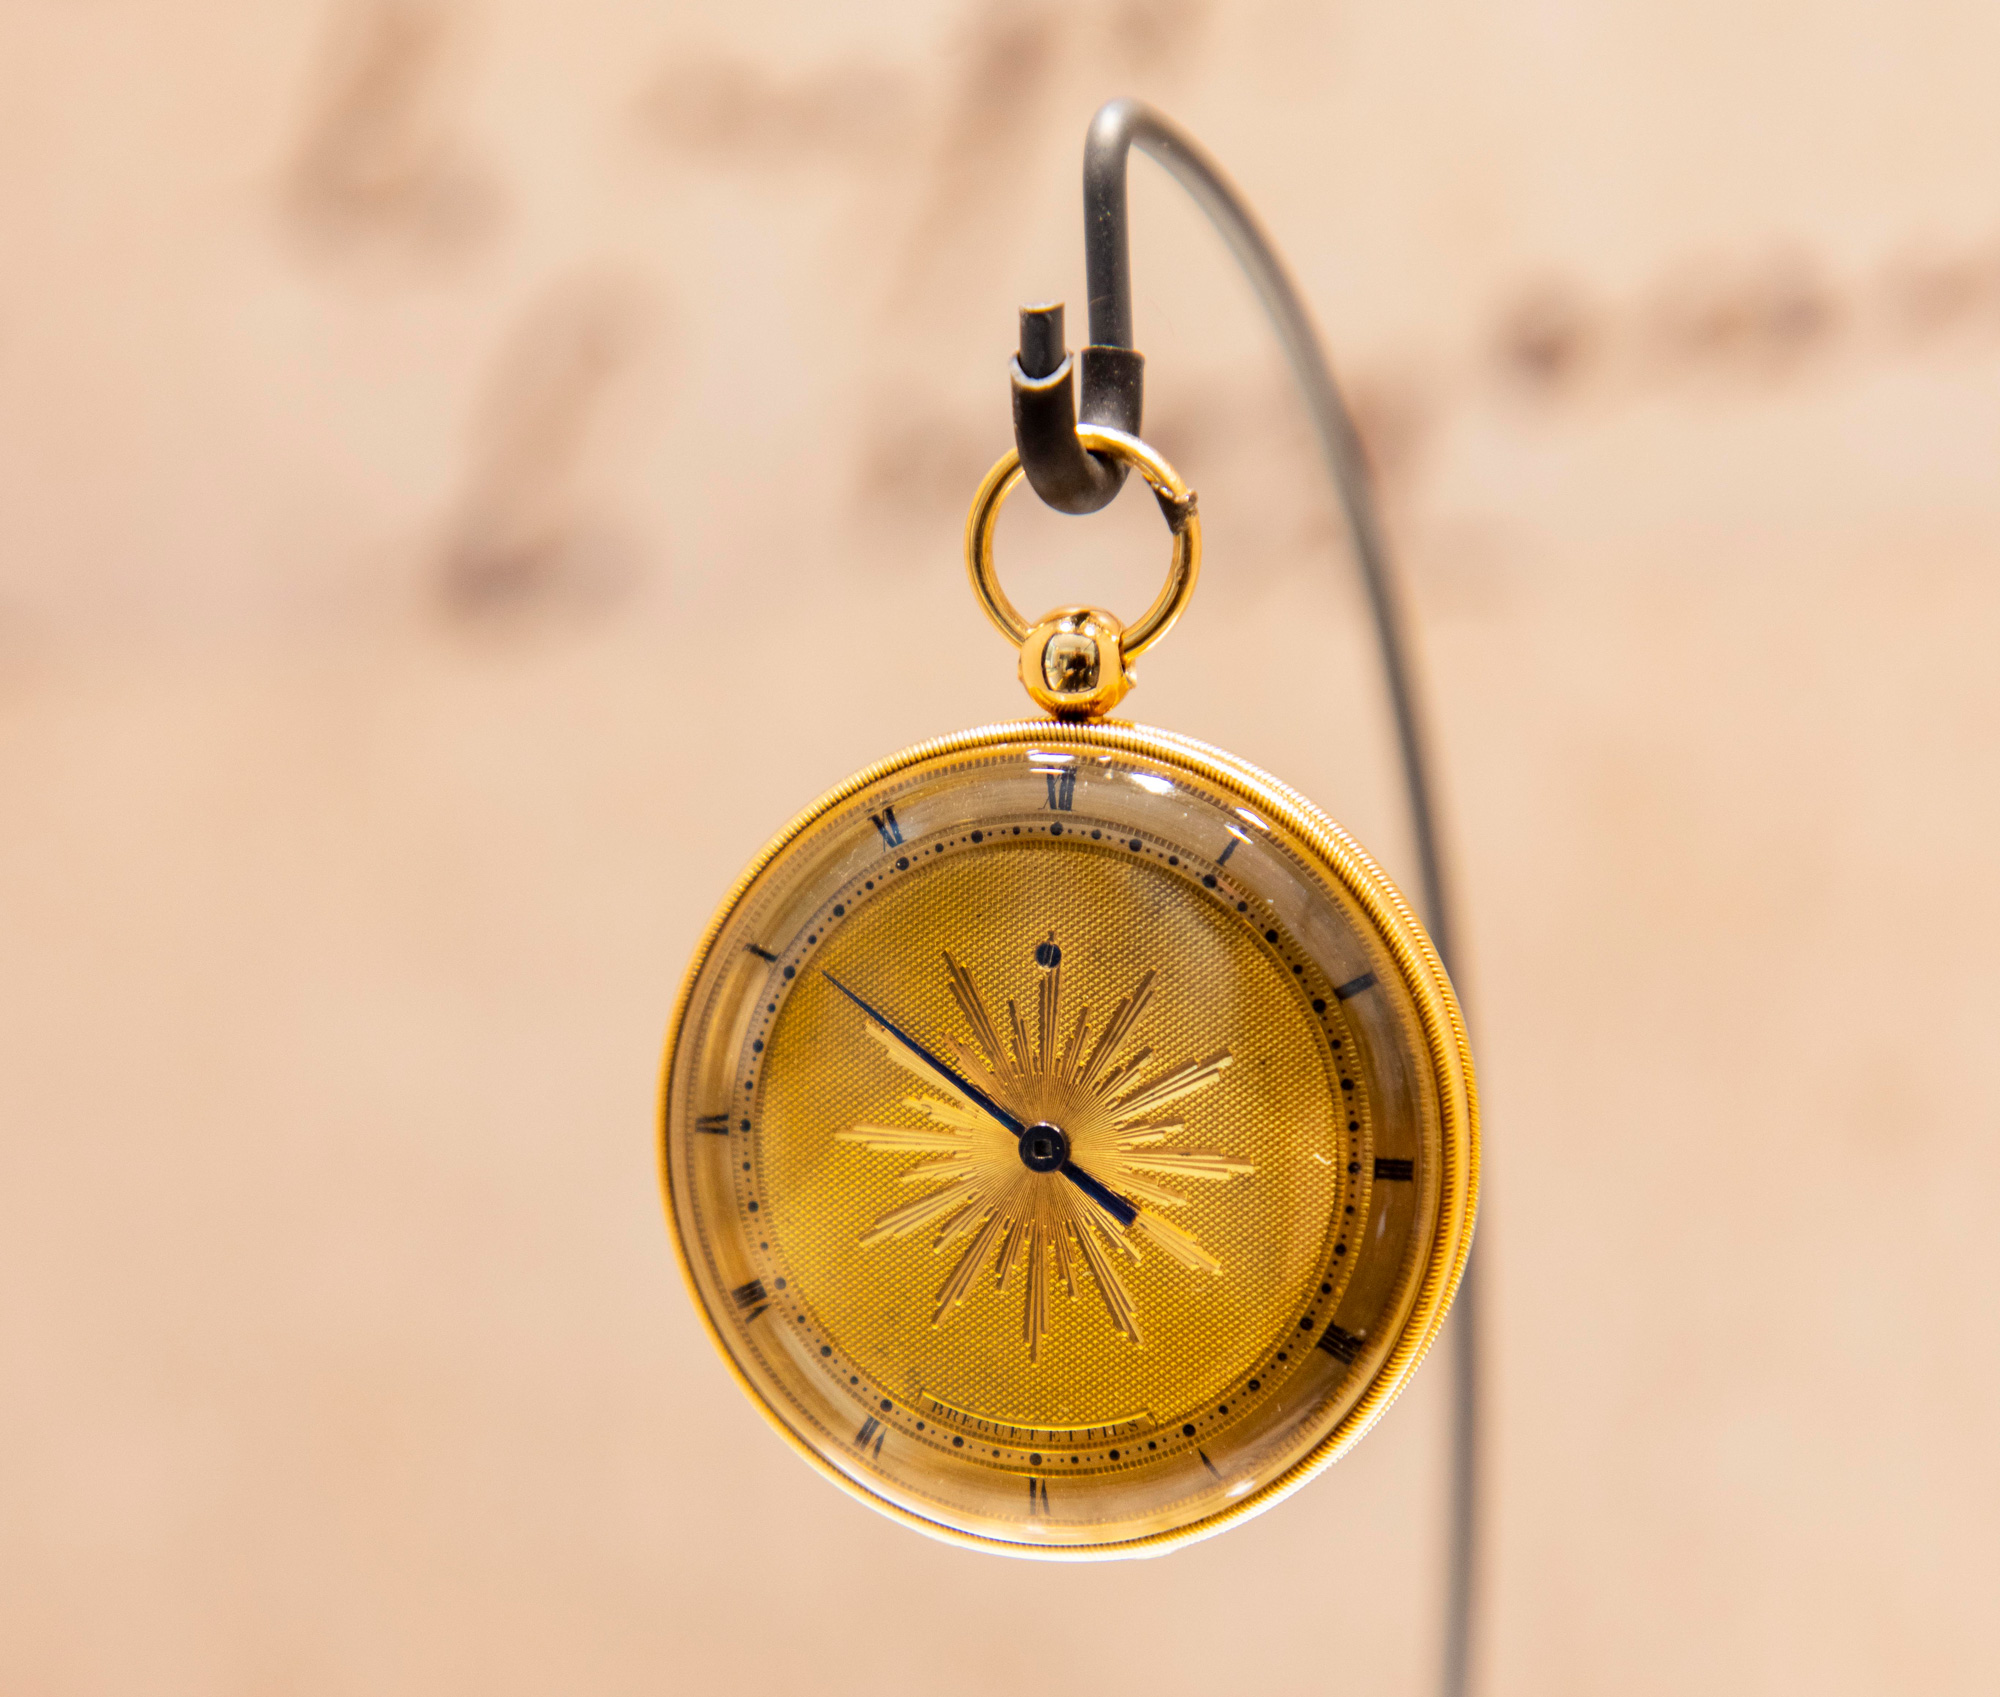 小型（徽章式，médaillon）Subscription懷錶，金質錶殼，背面綴以機刻太陽飾紋，金質錶盤飾有機刻太陽飾紋，紅寶石工字輪擒縱裝置。1806年11月12日售予格拉索科維克斯王子（Prince Grassalkowics），價格為1320 法郎。珍罕的小型單針錶。（圖片來源／寶璣）